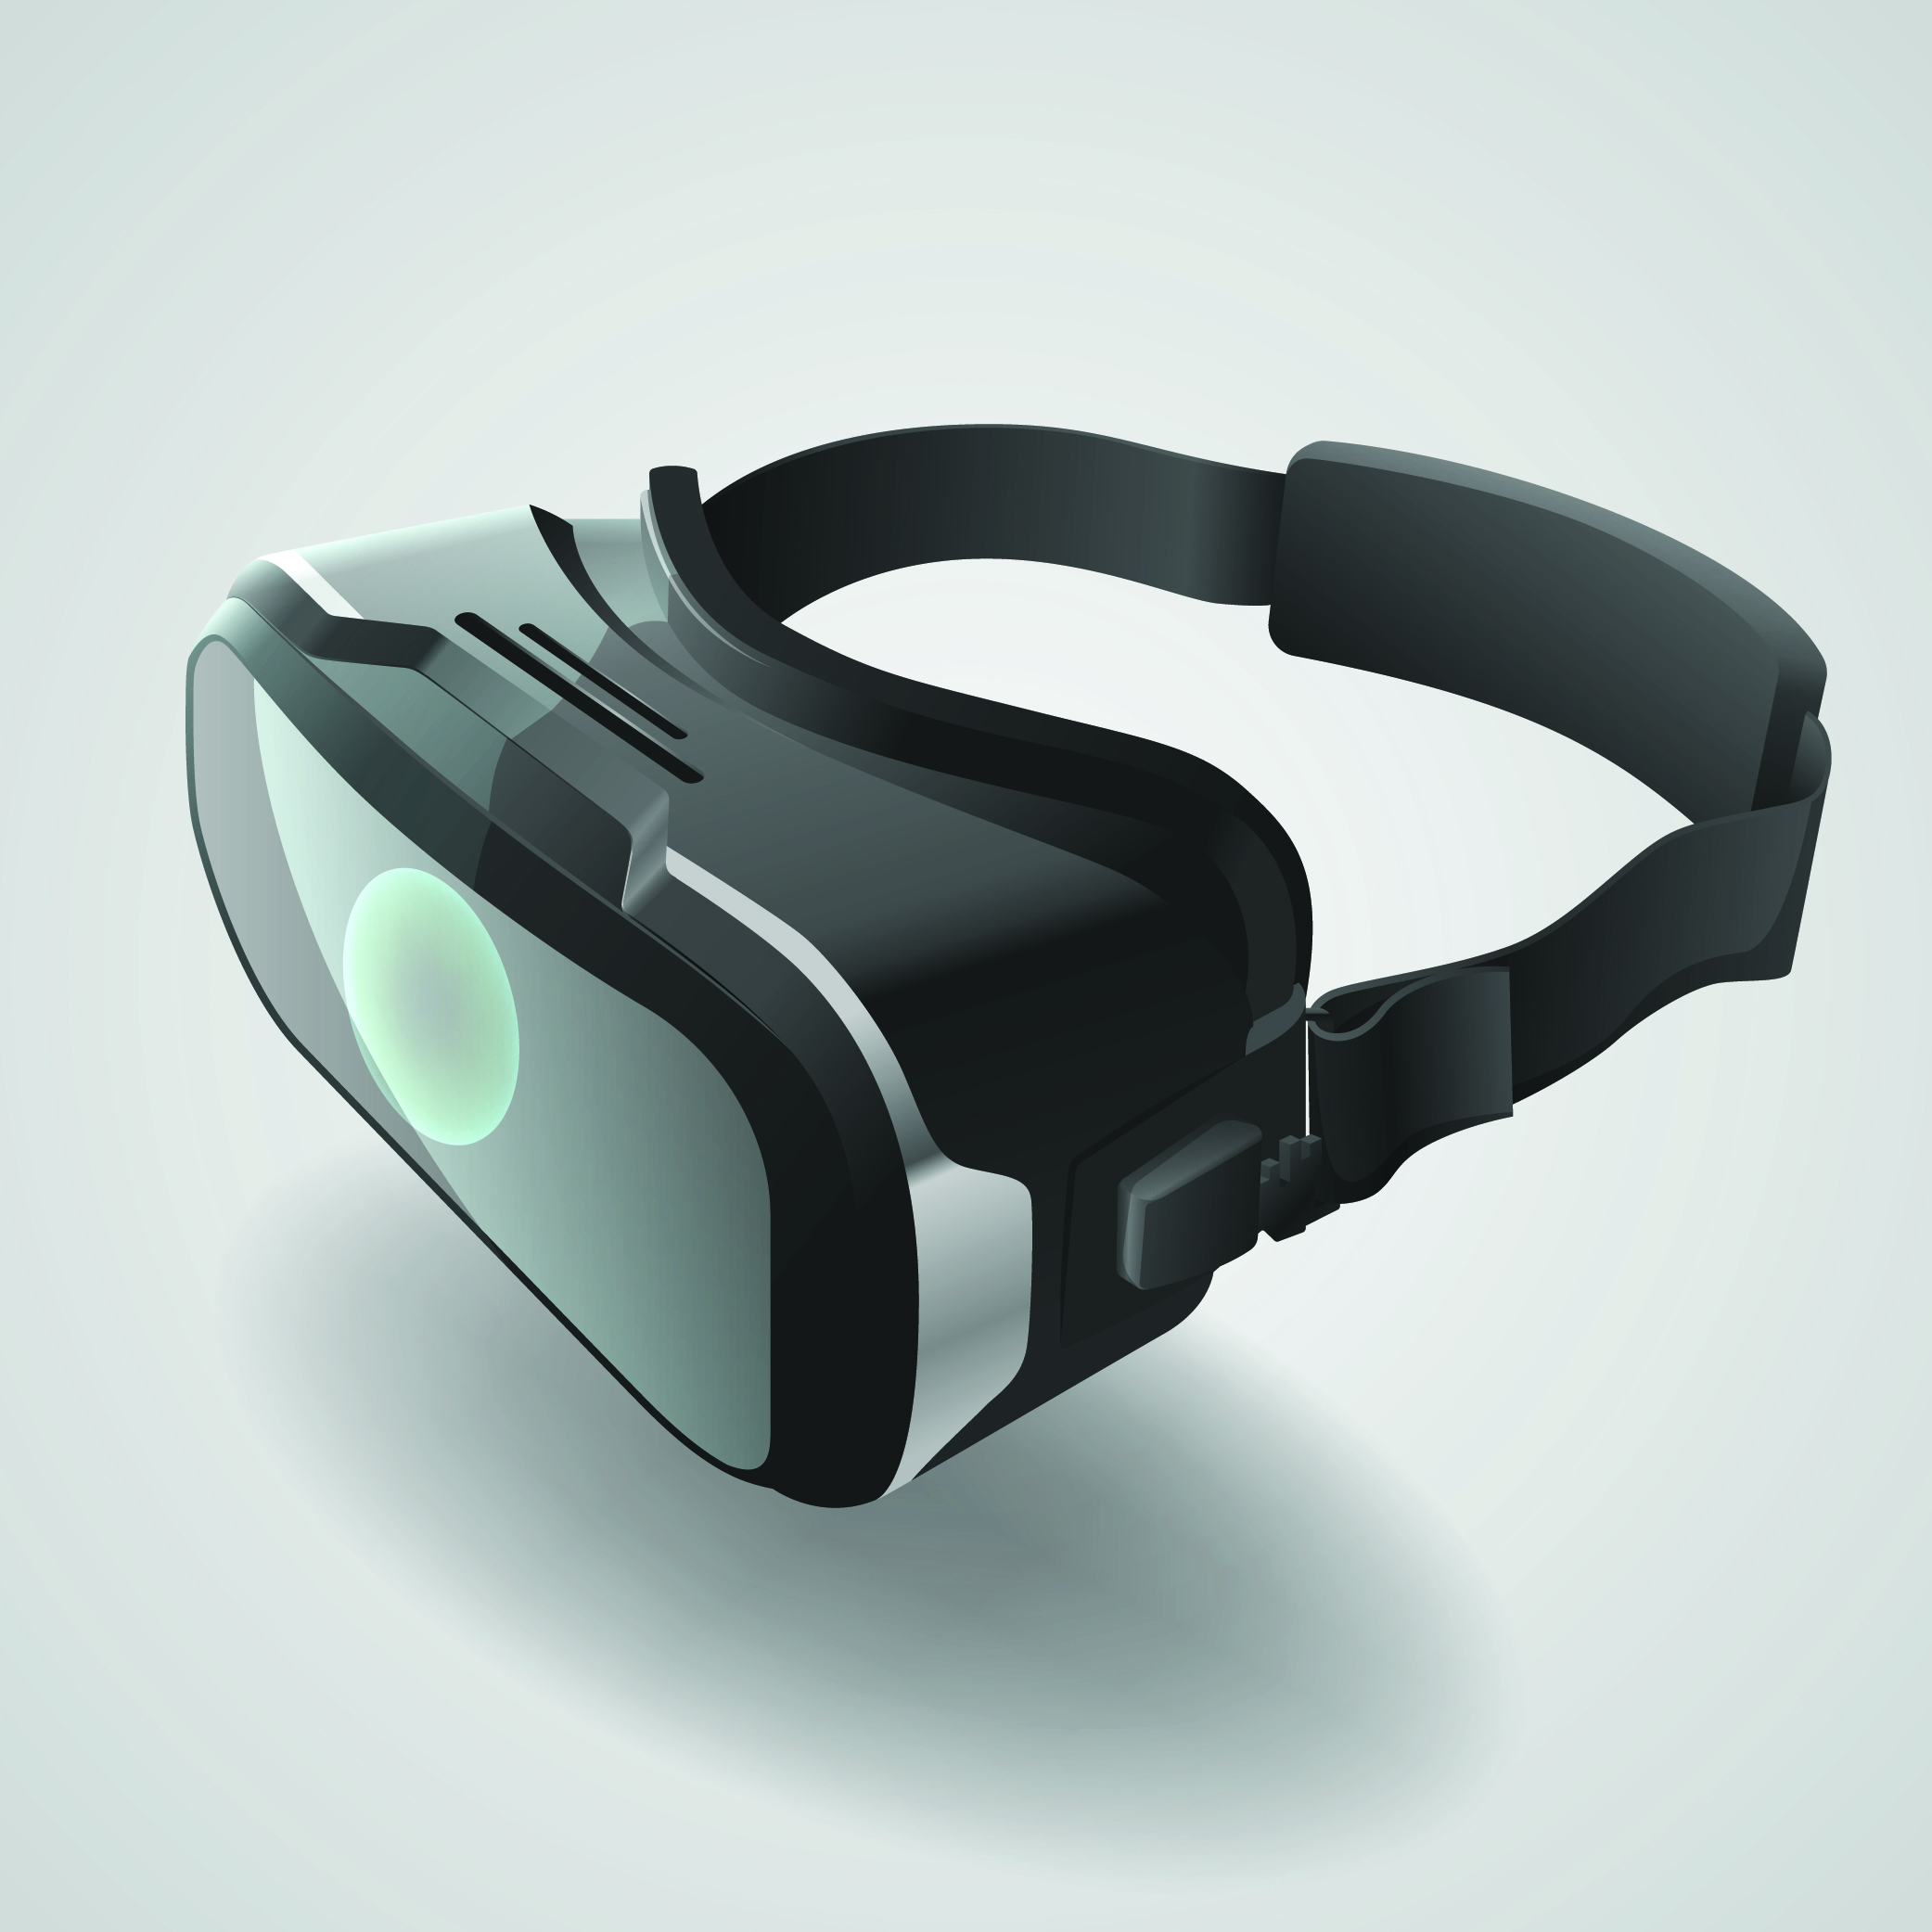 VR glasses on white background